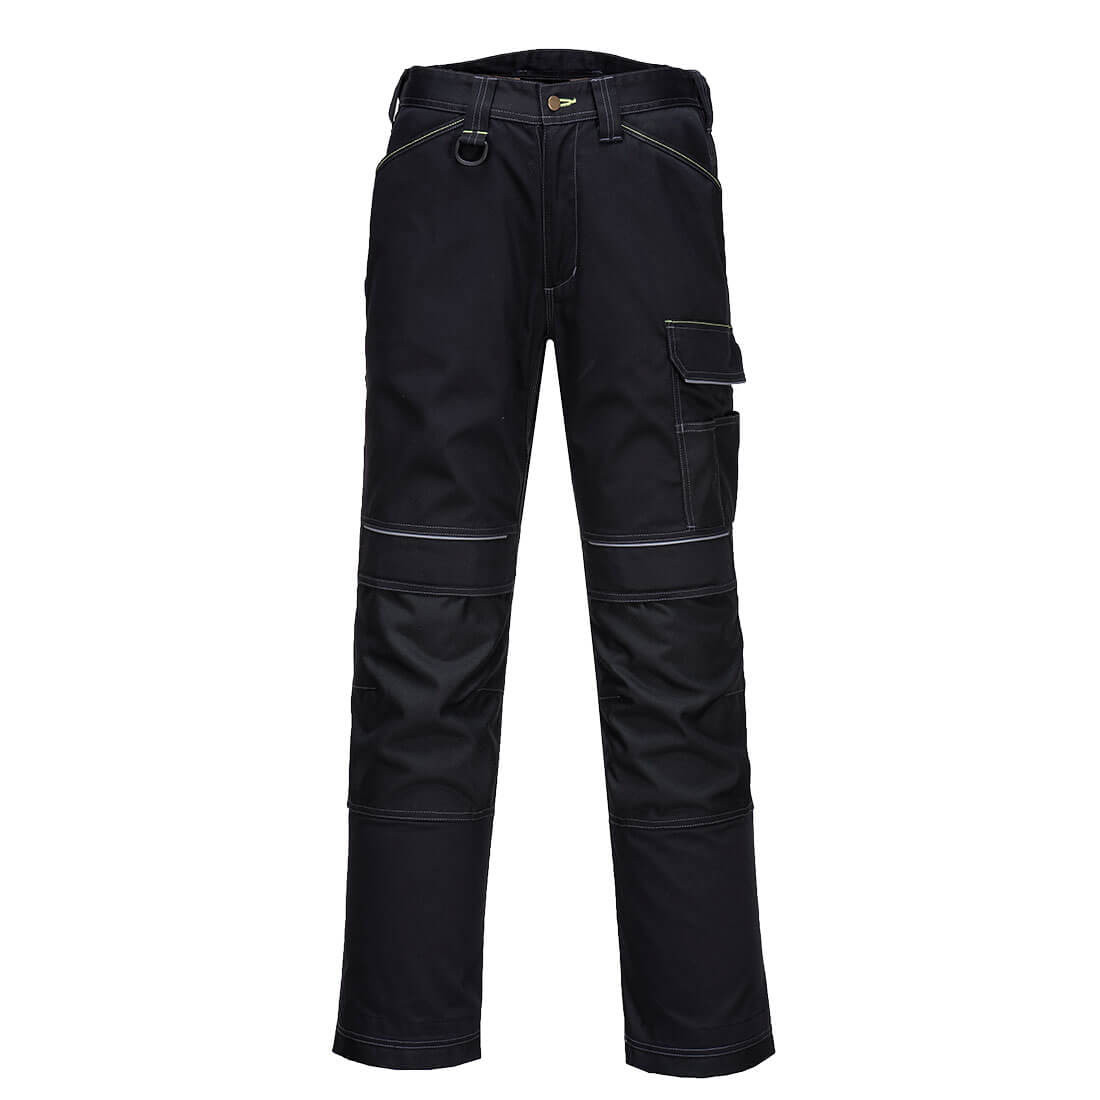 Pantalon de Travail d'hiver PW3 doublé - Les vêtements de protection